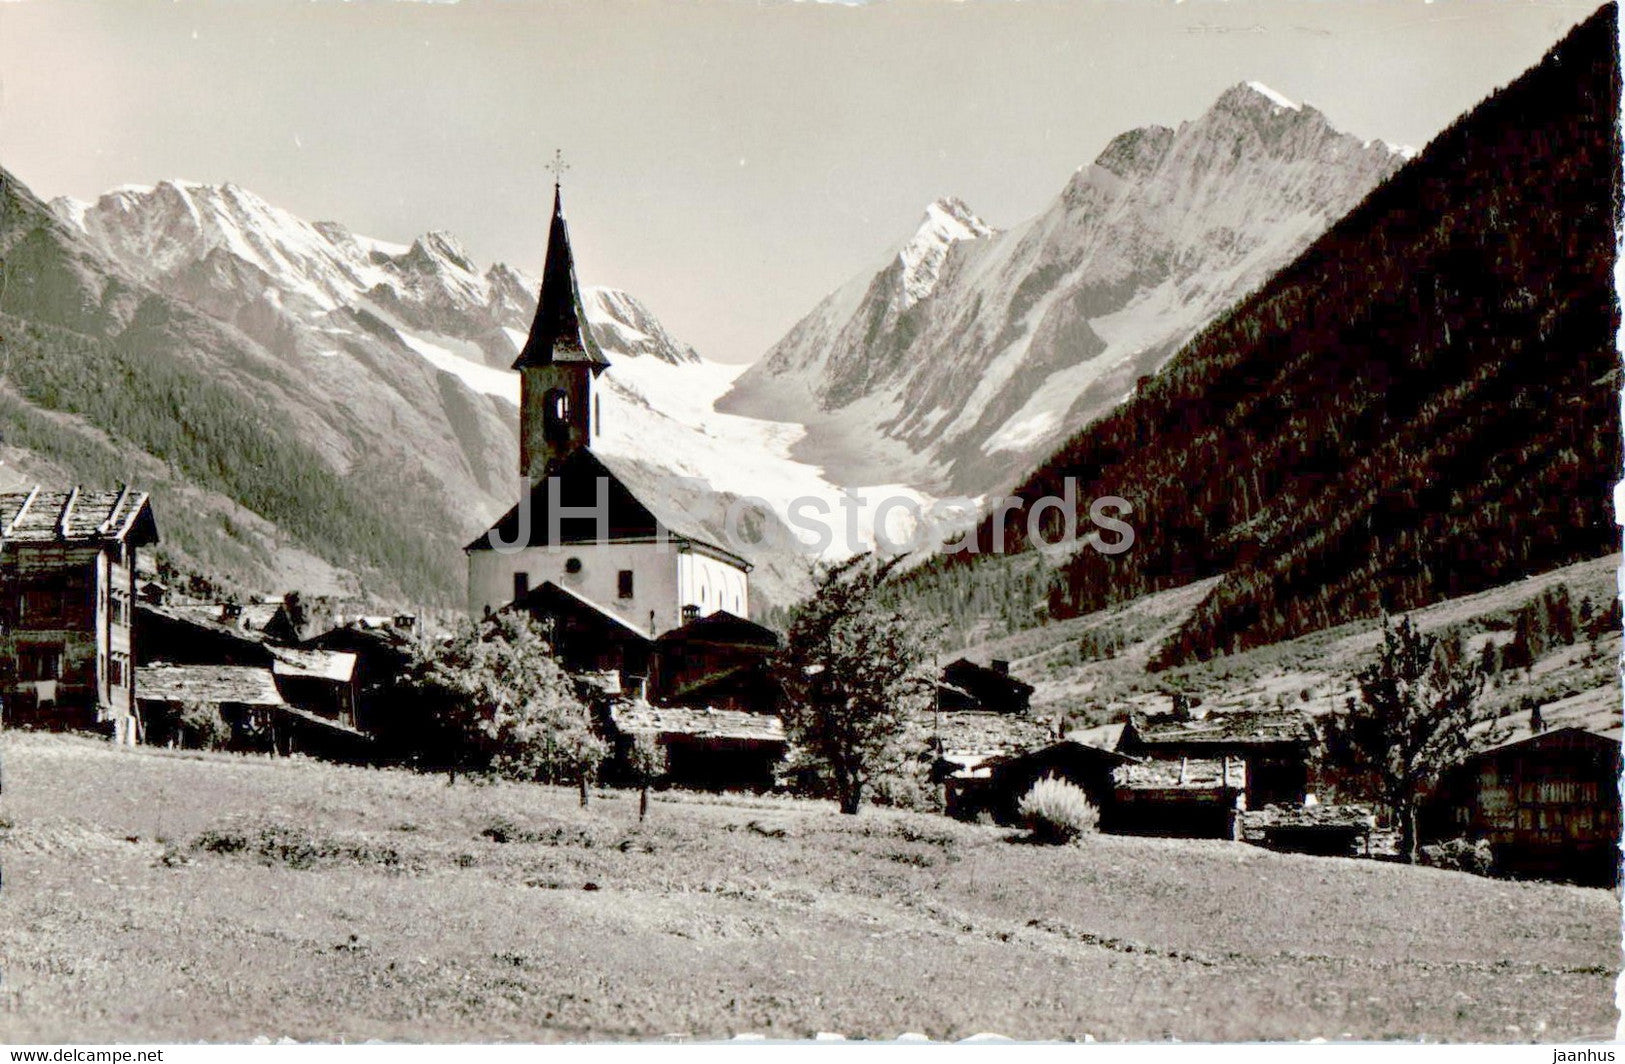 Kippel im Lotschental - Langgletscher Sattelhorn Schinhorn - 4644 - old postcard - Switzerland - unused - JH Postcards